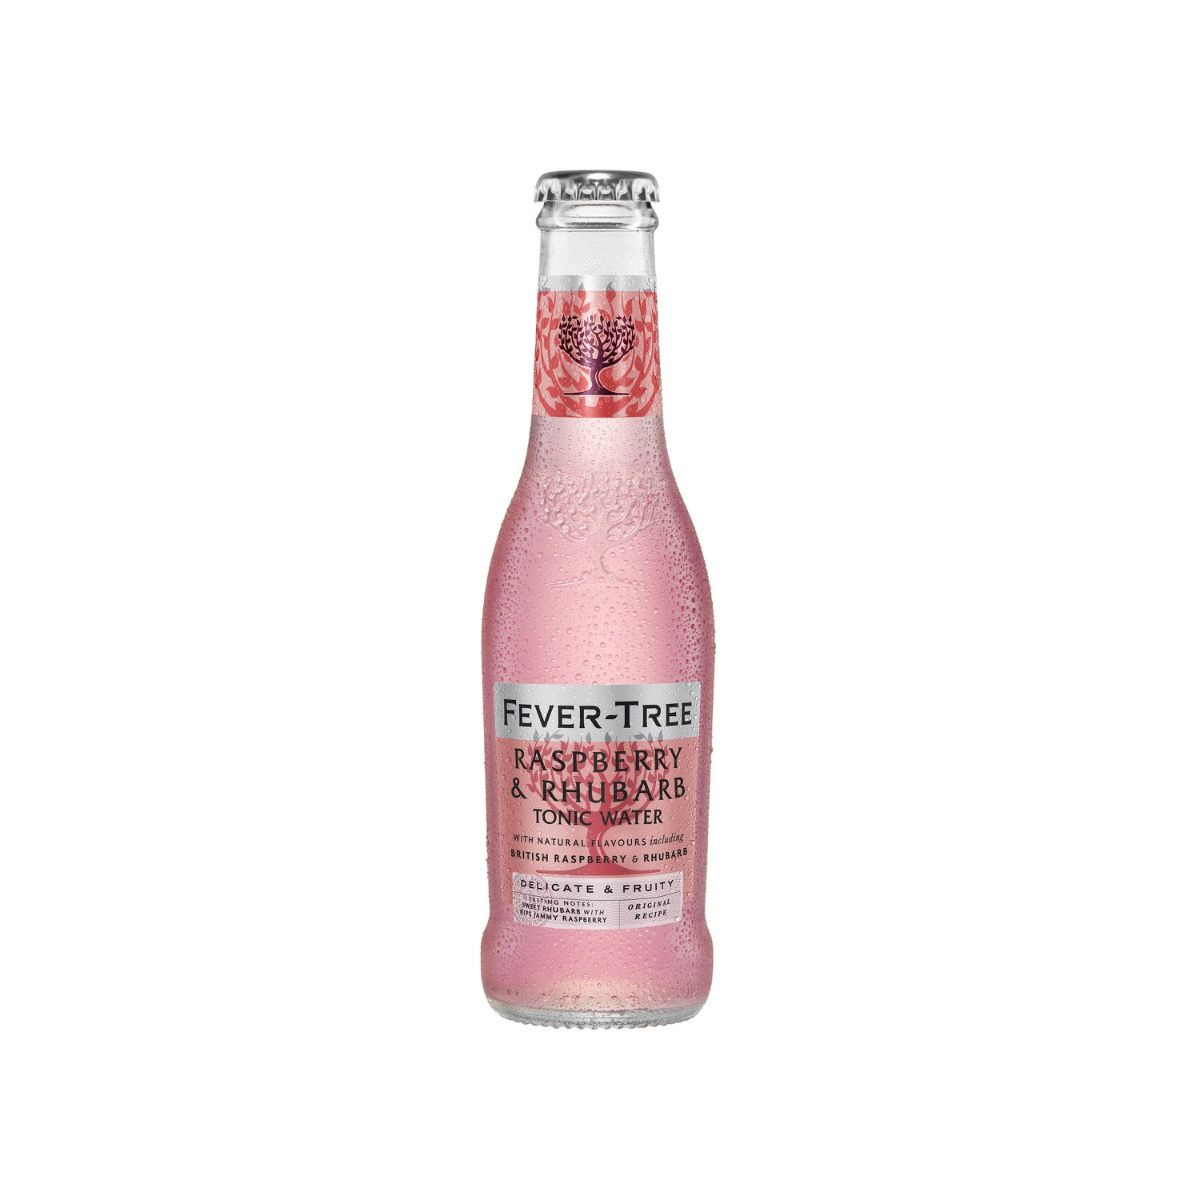 Brug Fever-Tree Raspberry & Rhubarb Tonic Water 200ml til en forbedret oplevelse